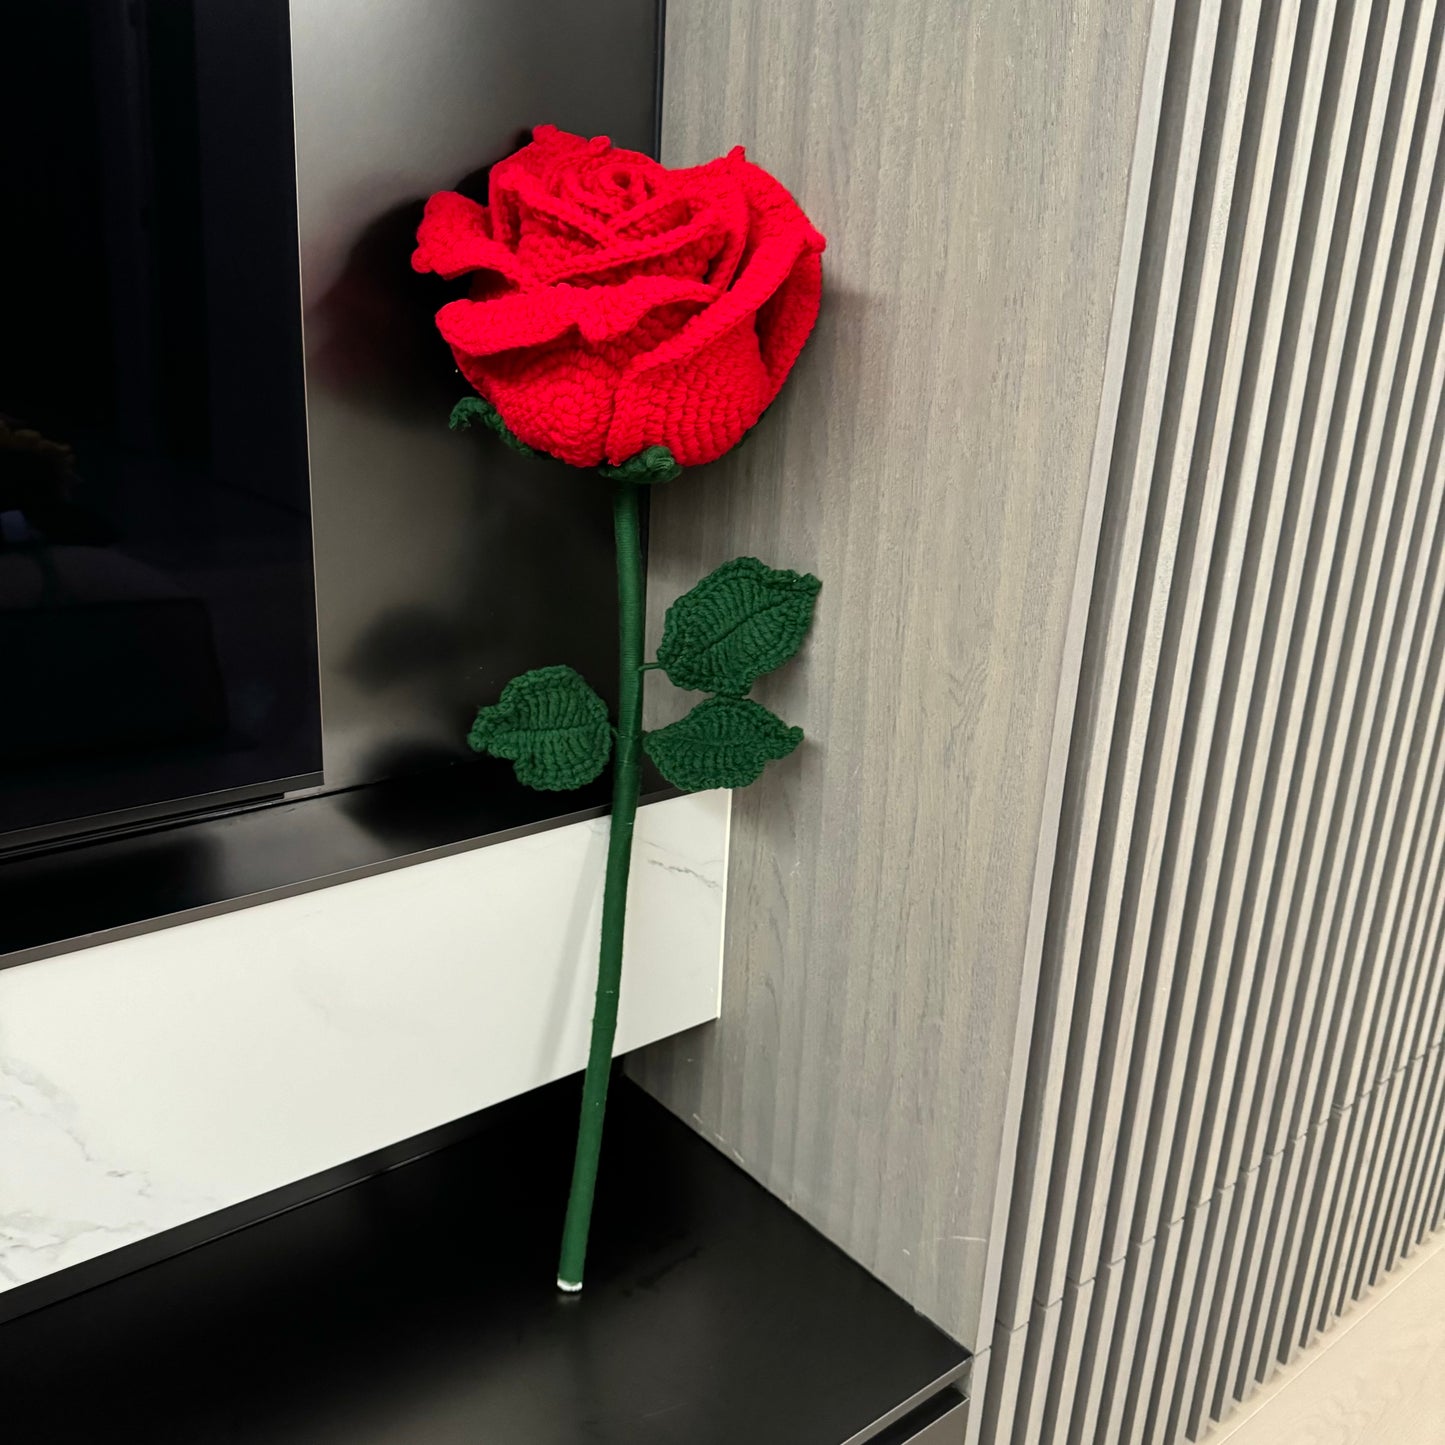 Handgemachter gehäkelter riesiger Blumenstecker als Dekoration – Requisiten aus Sonnenblume und roter Rose für Partys, Feiern und Abschlussfeiern